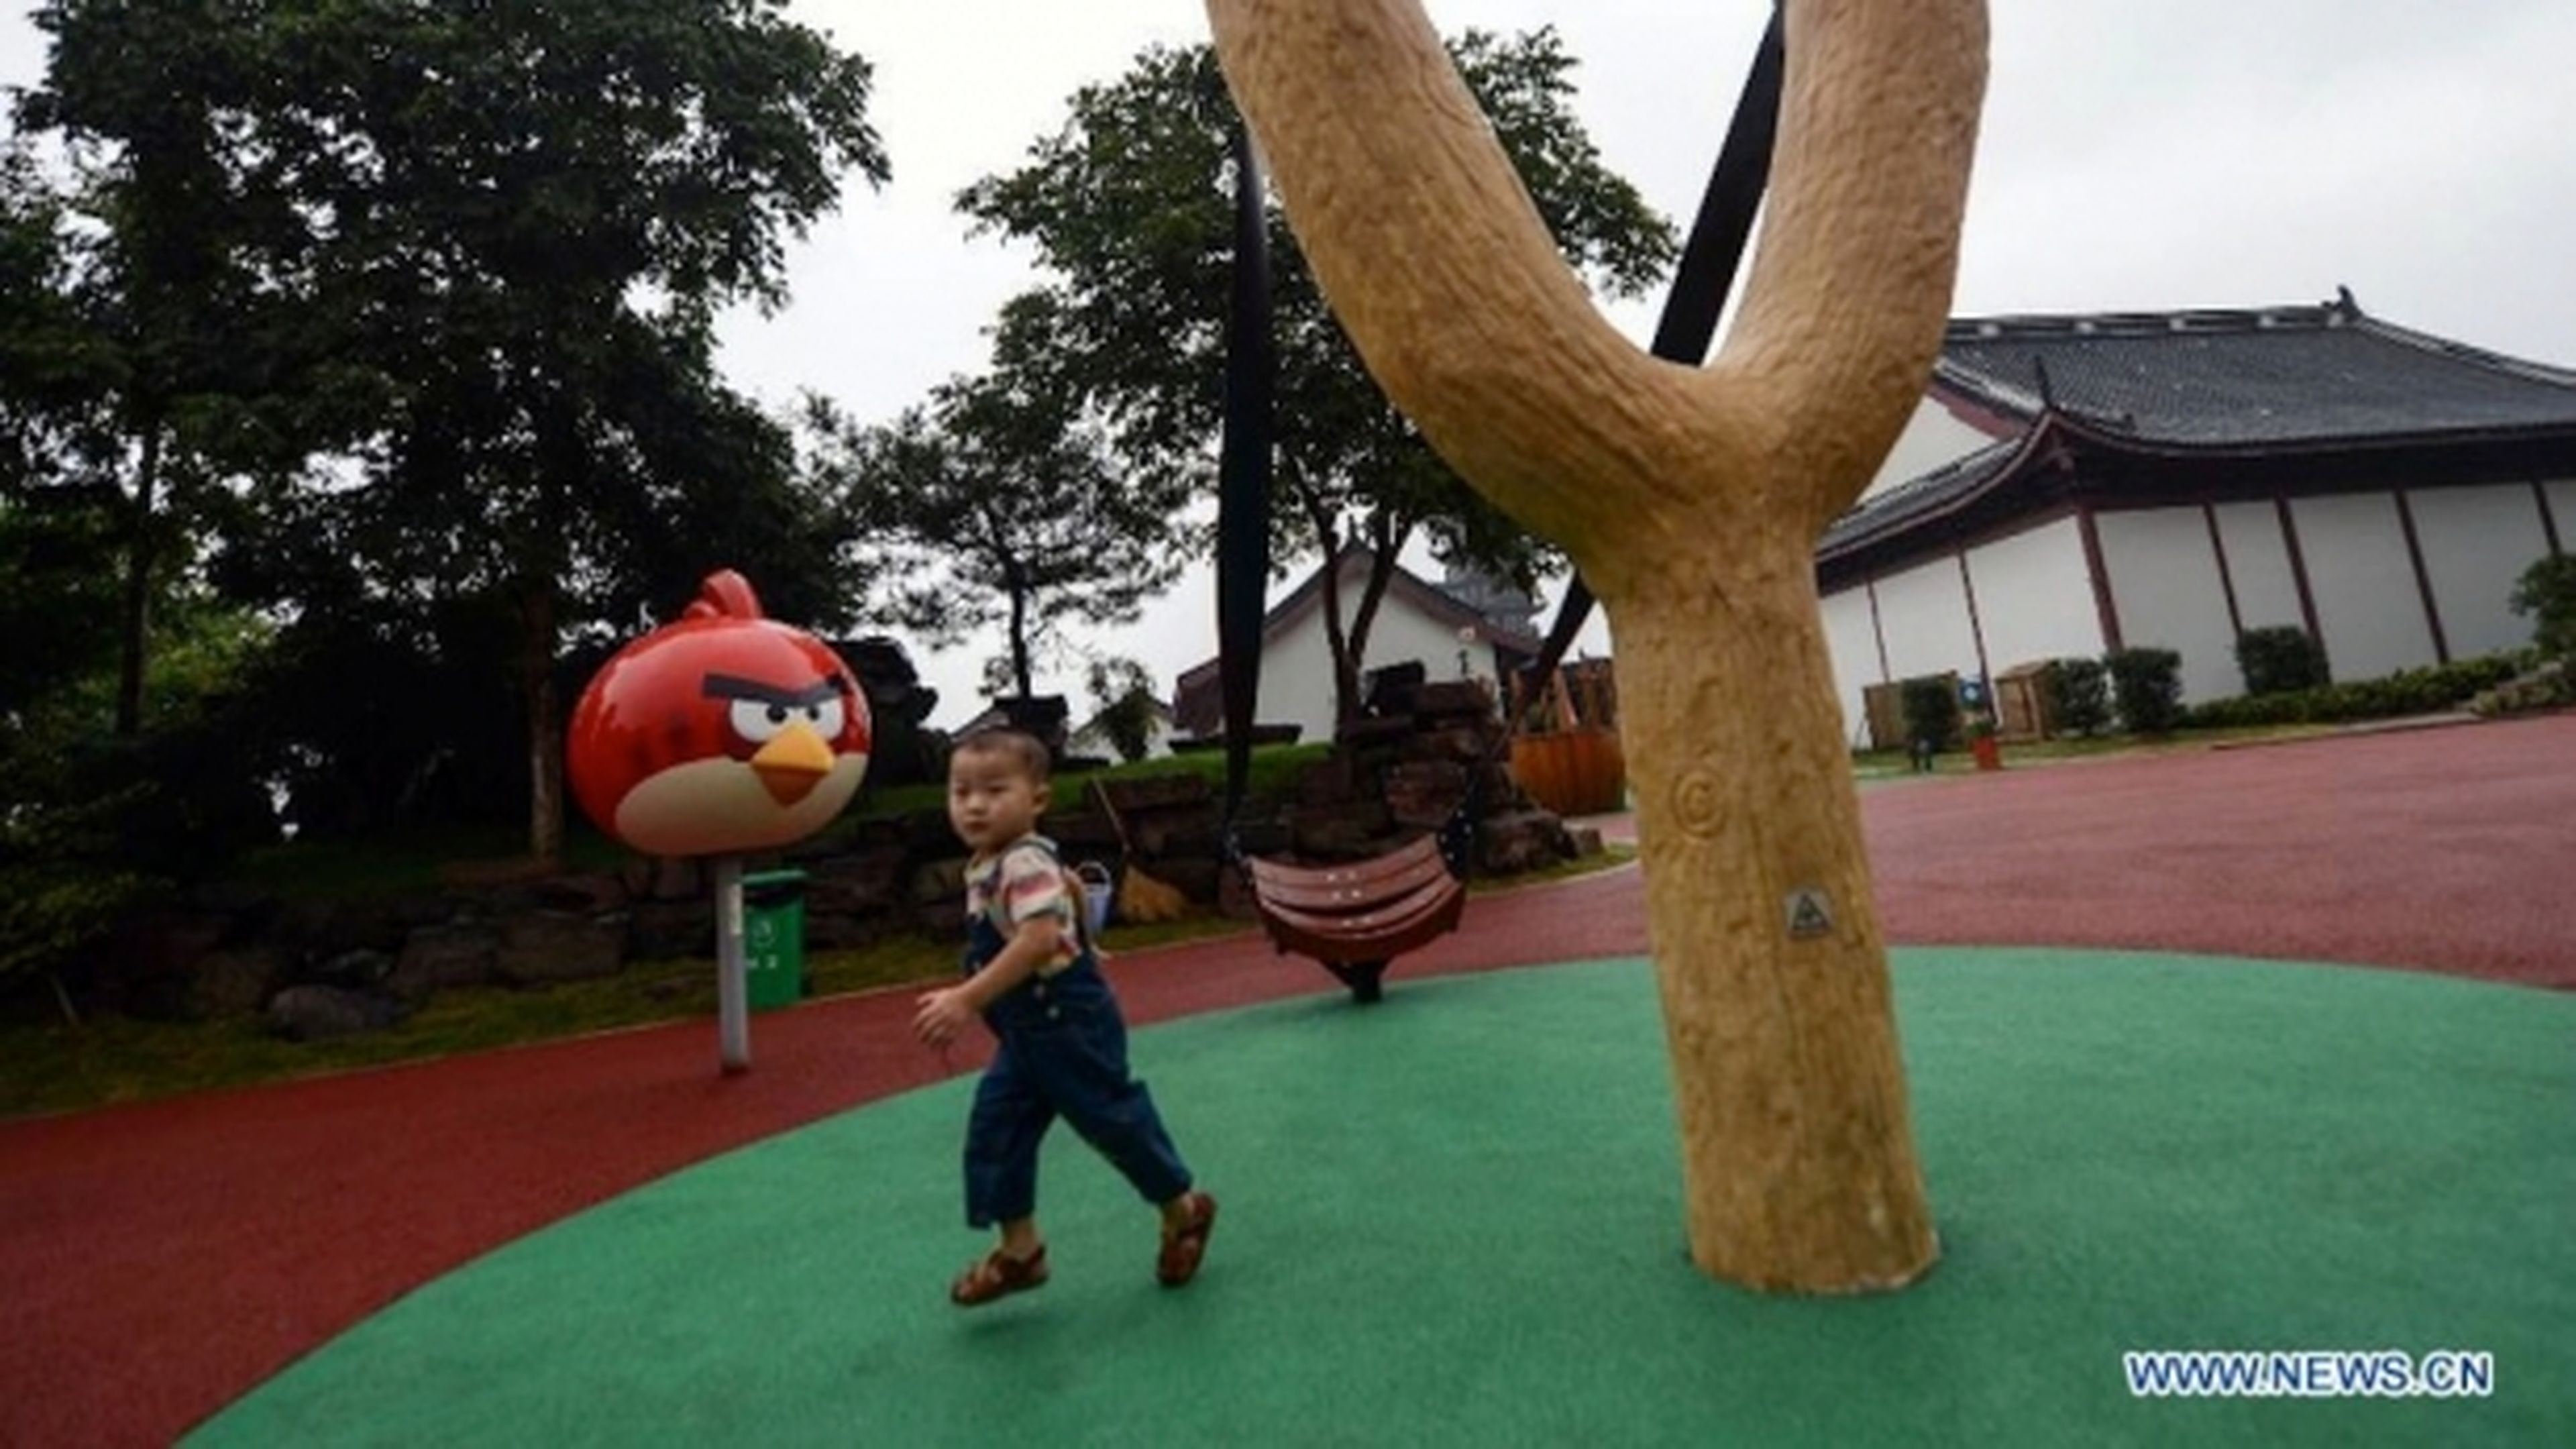 Abierto el parque temático de Angry Birds en China